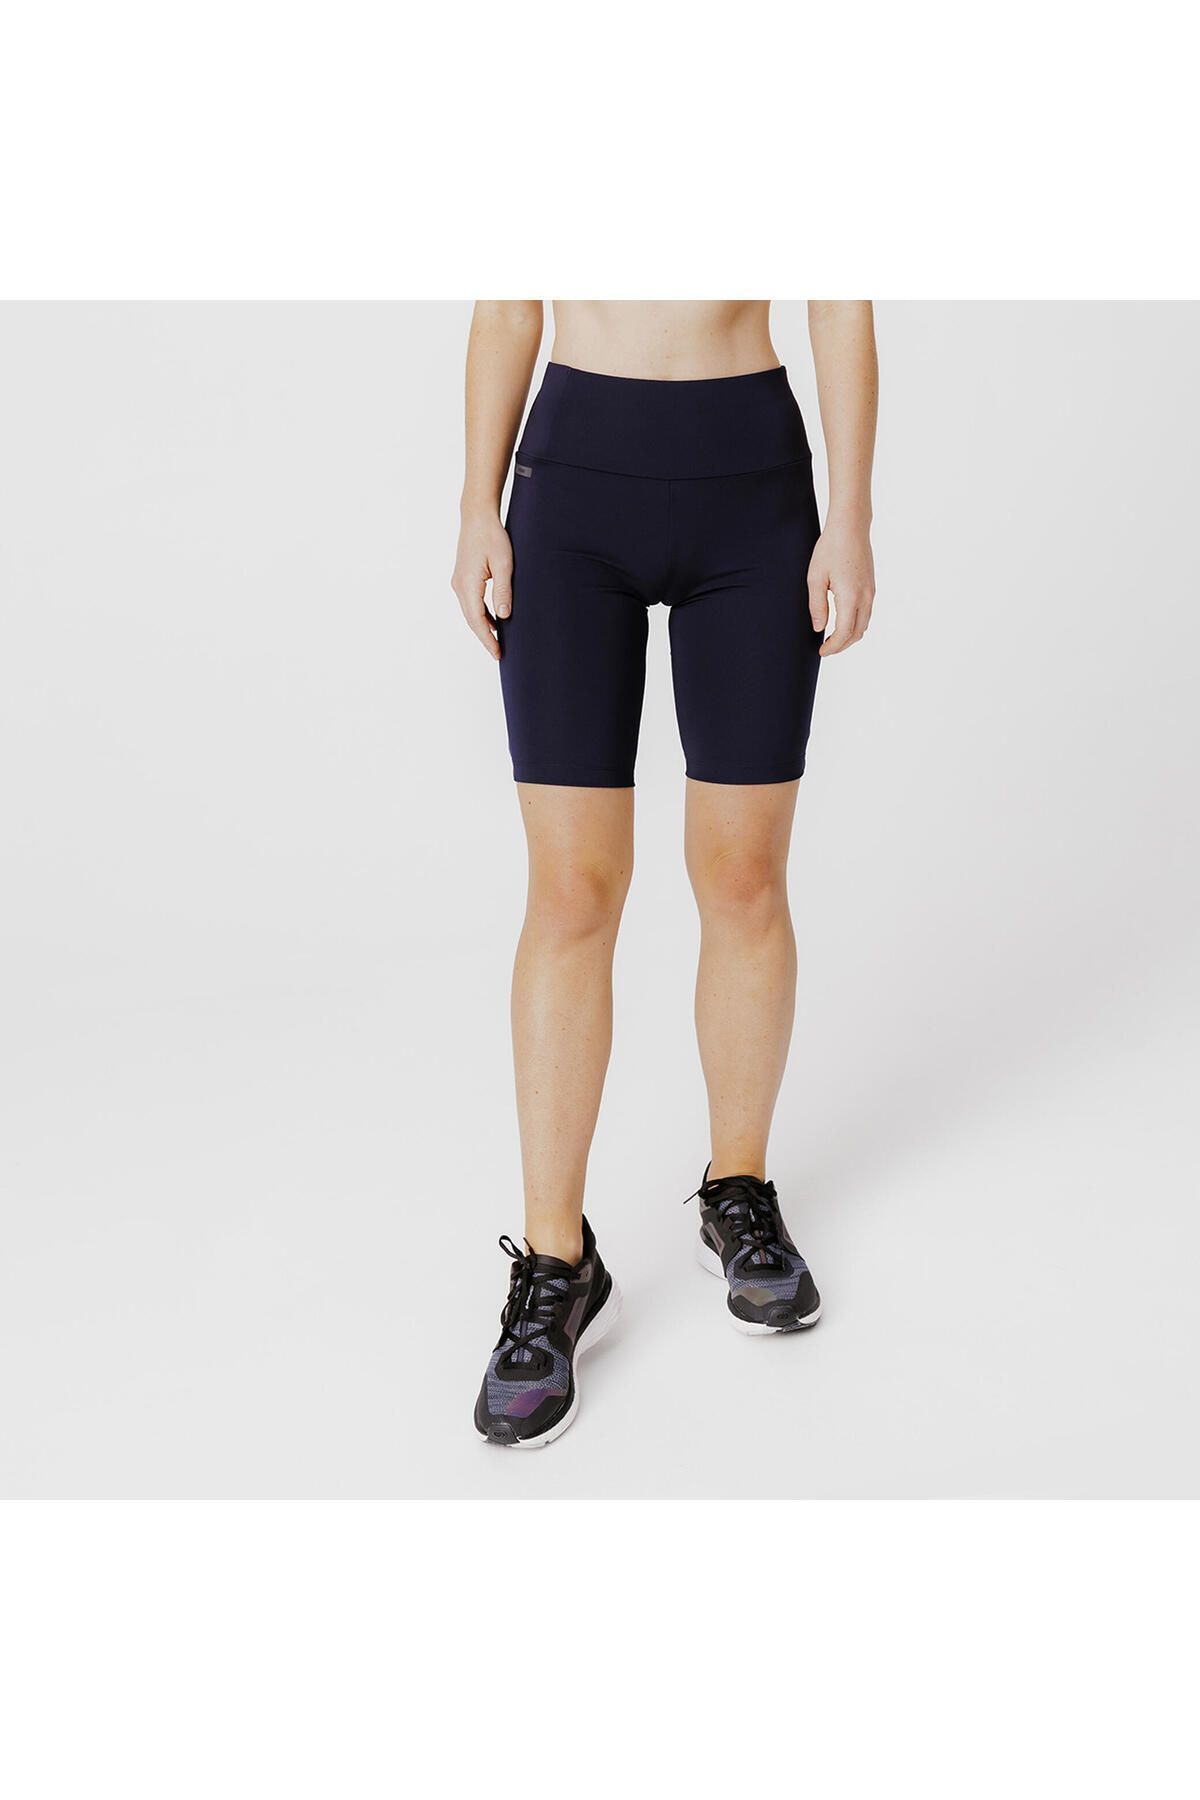 Decathlon Kadın Kısa Koşu Taytı - Mavi - Run Dry 500 Support